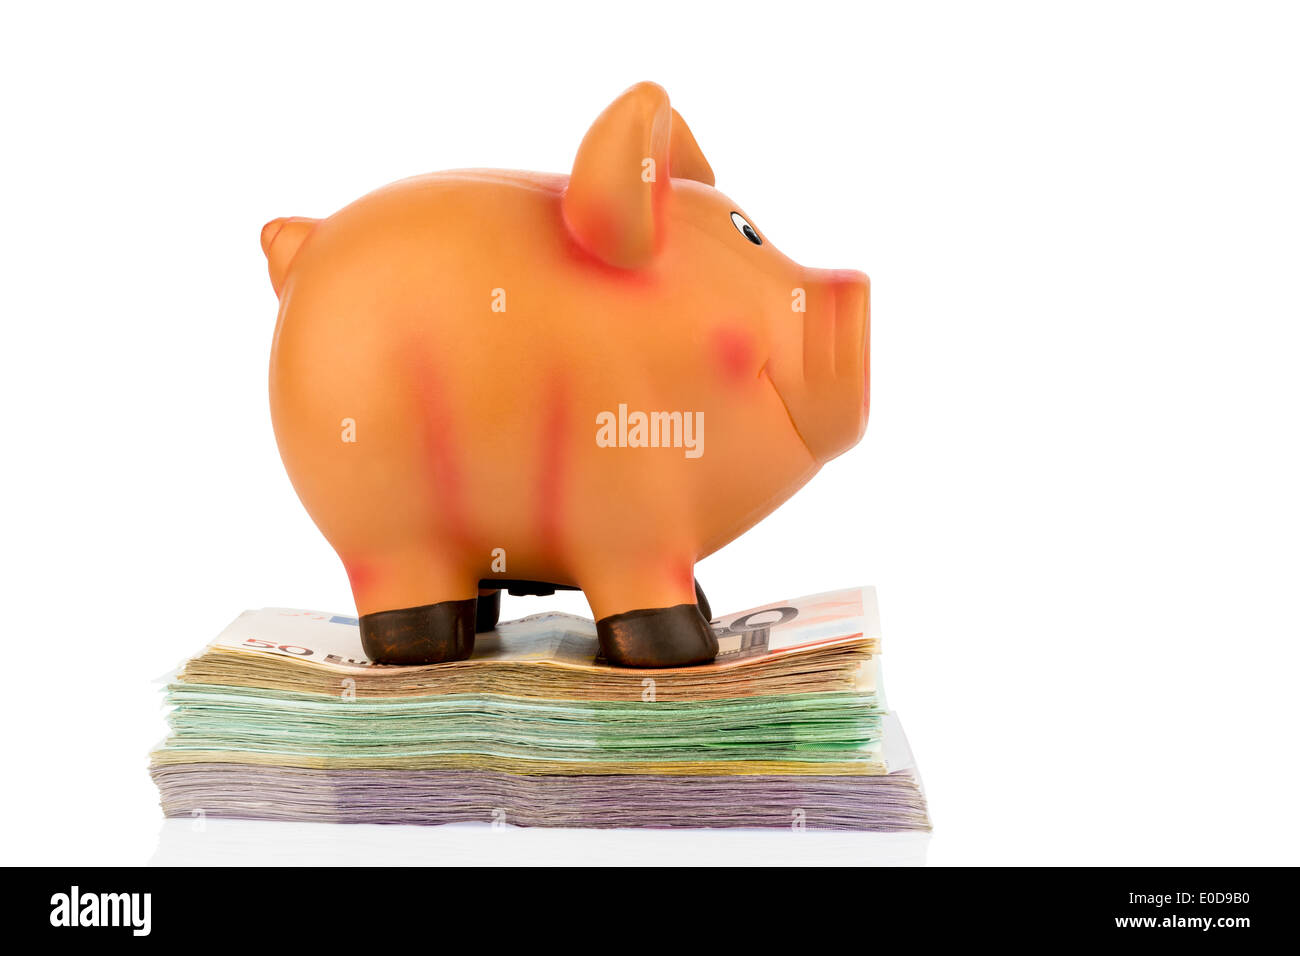 A piggy bank stands on bank notes, symbolic photo for thrift, profitability, yield, Ein Sparschwein steht auf Banknoten, Symbolf Stock Photo